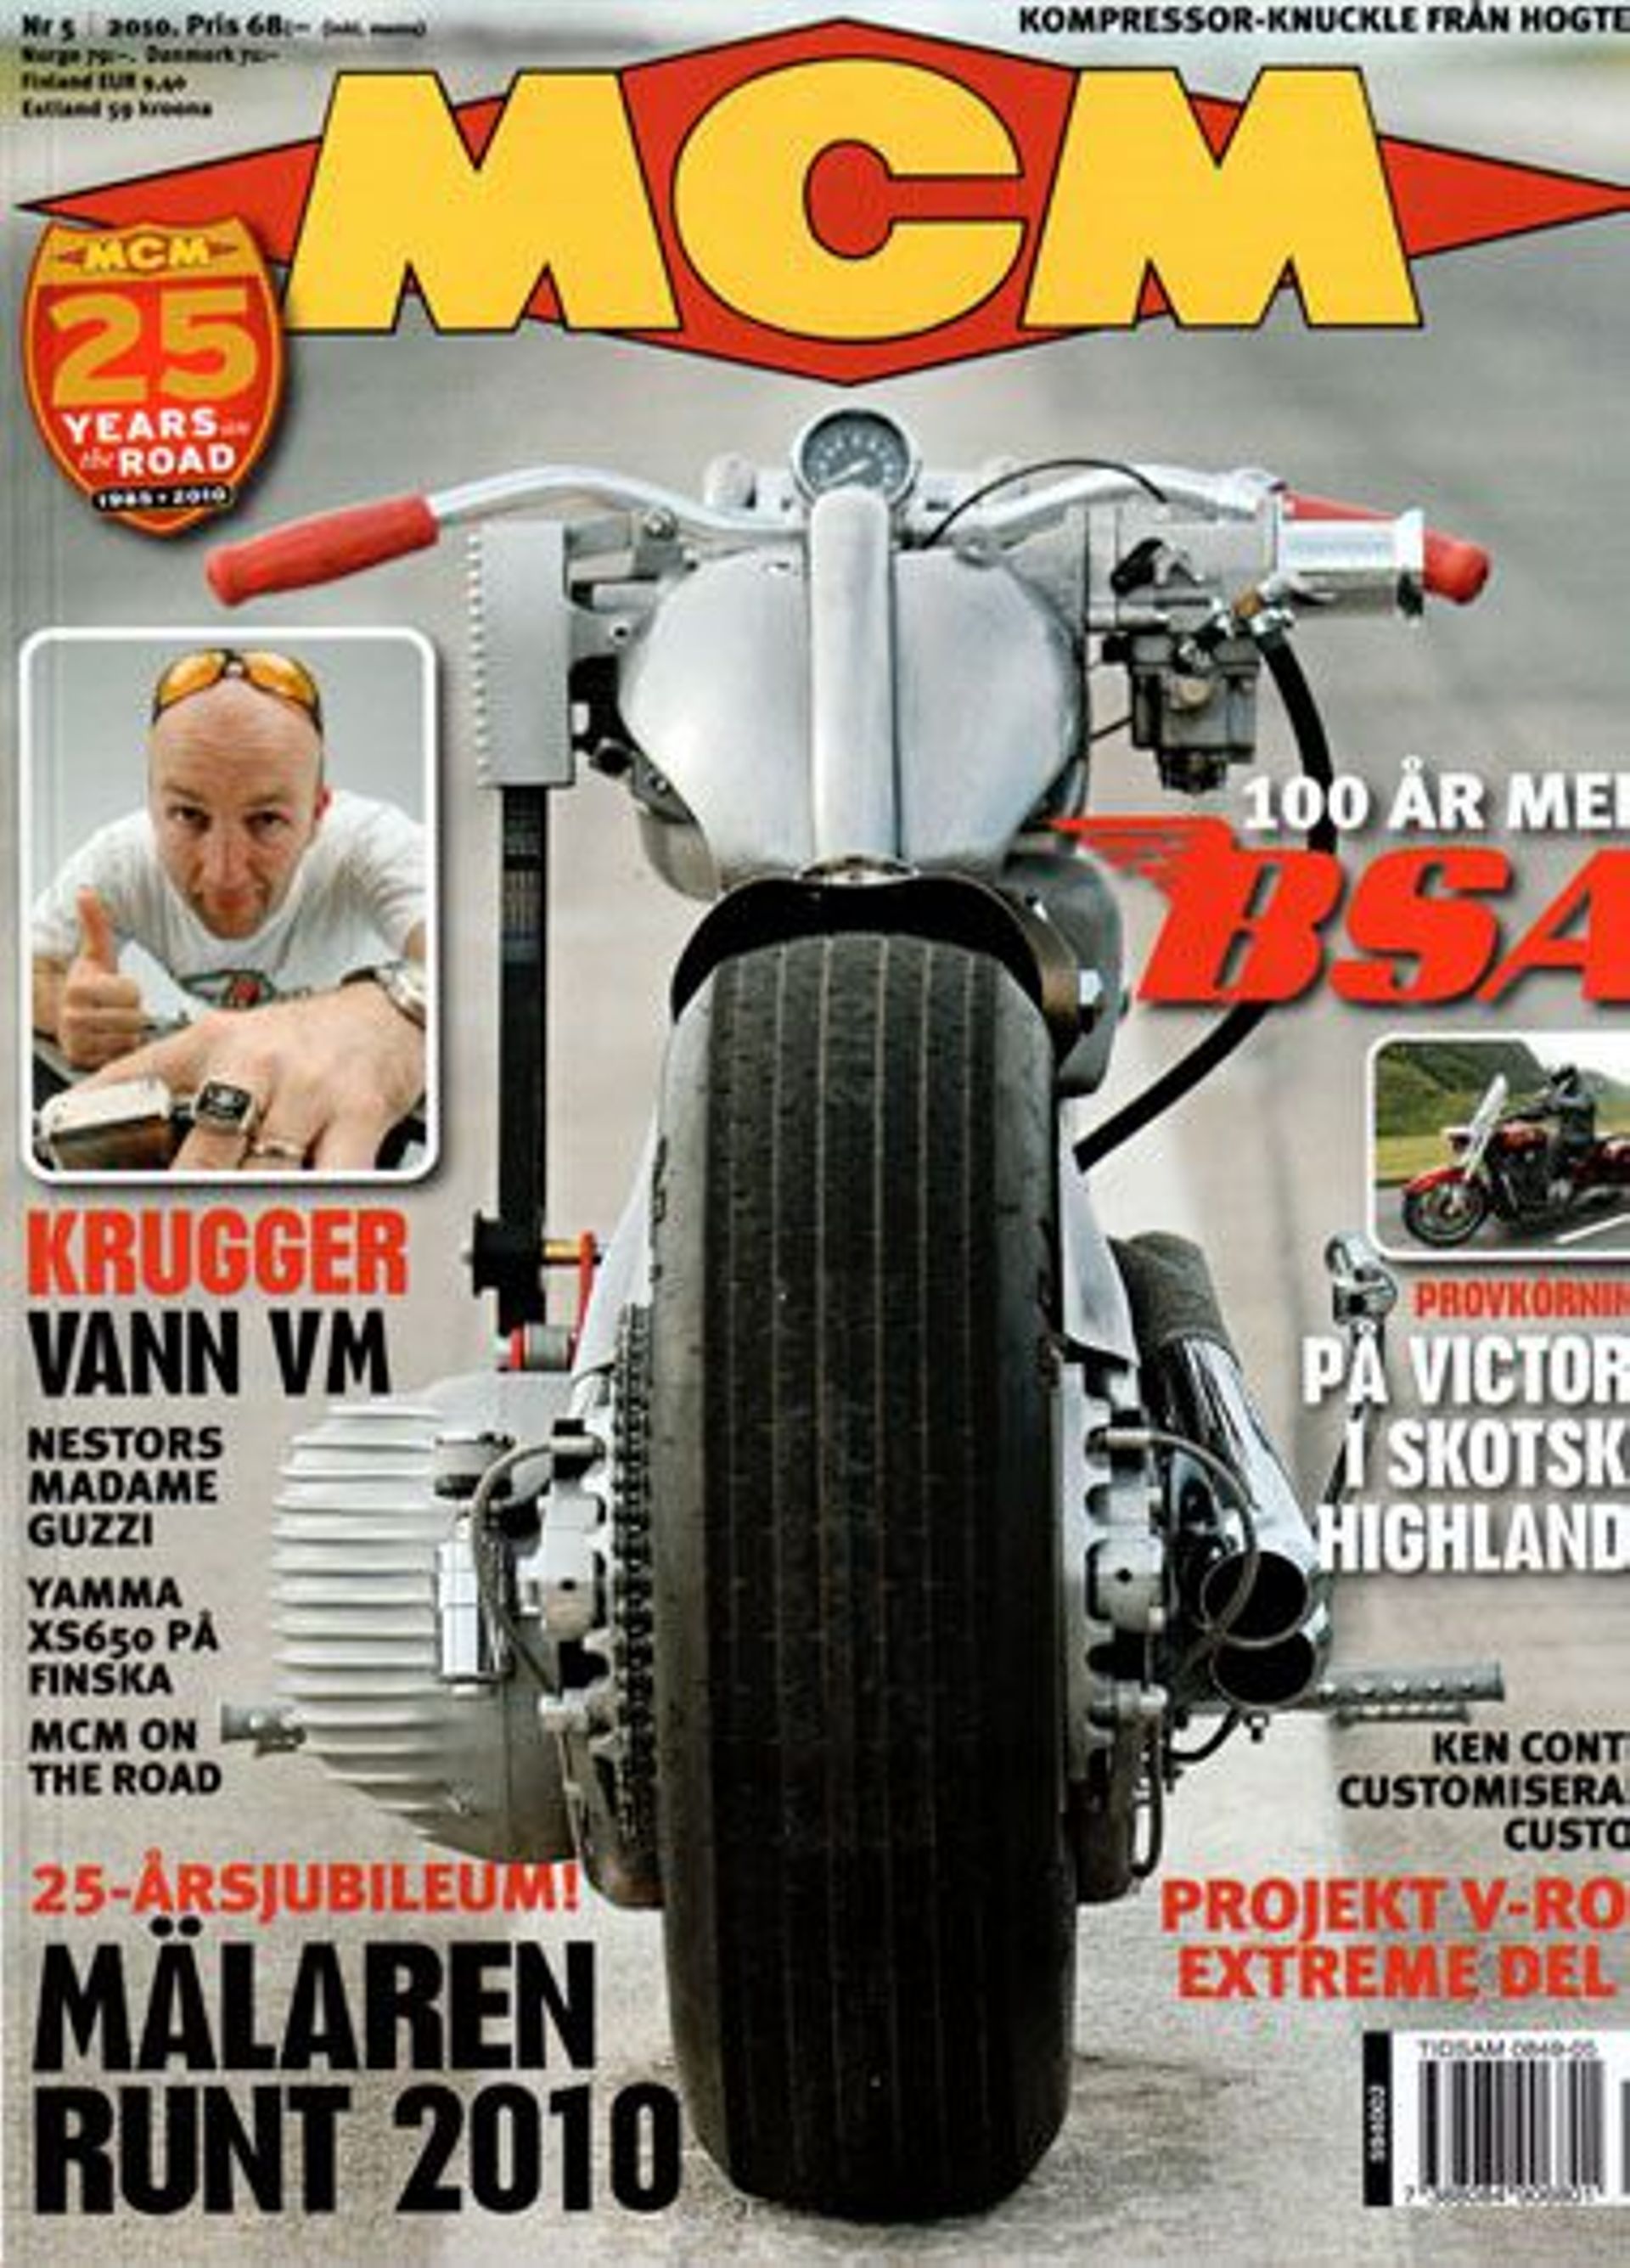 Fred Krugger, créateur de motos d'exception - La Belge histoire dans 7 à la Une